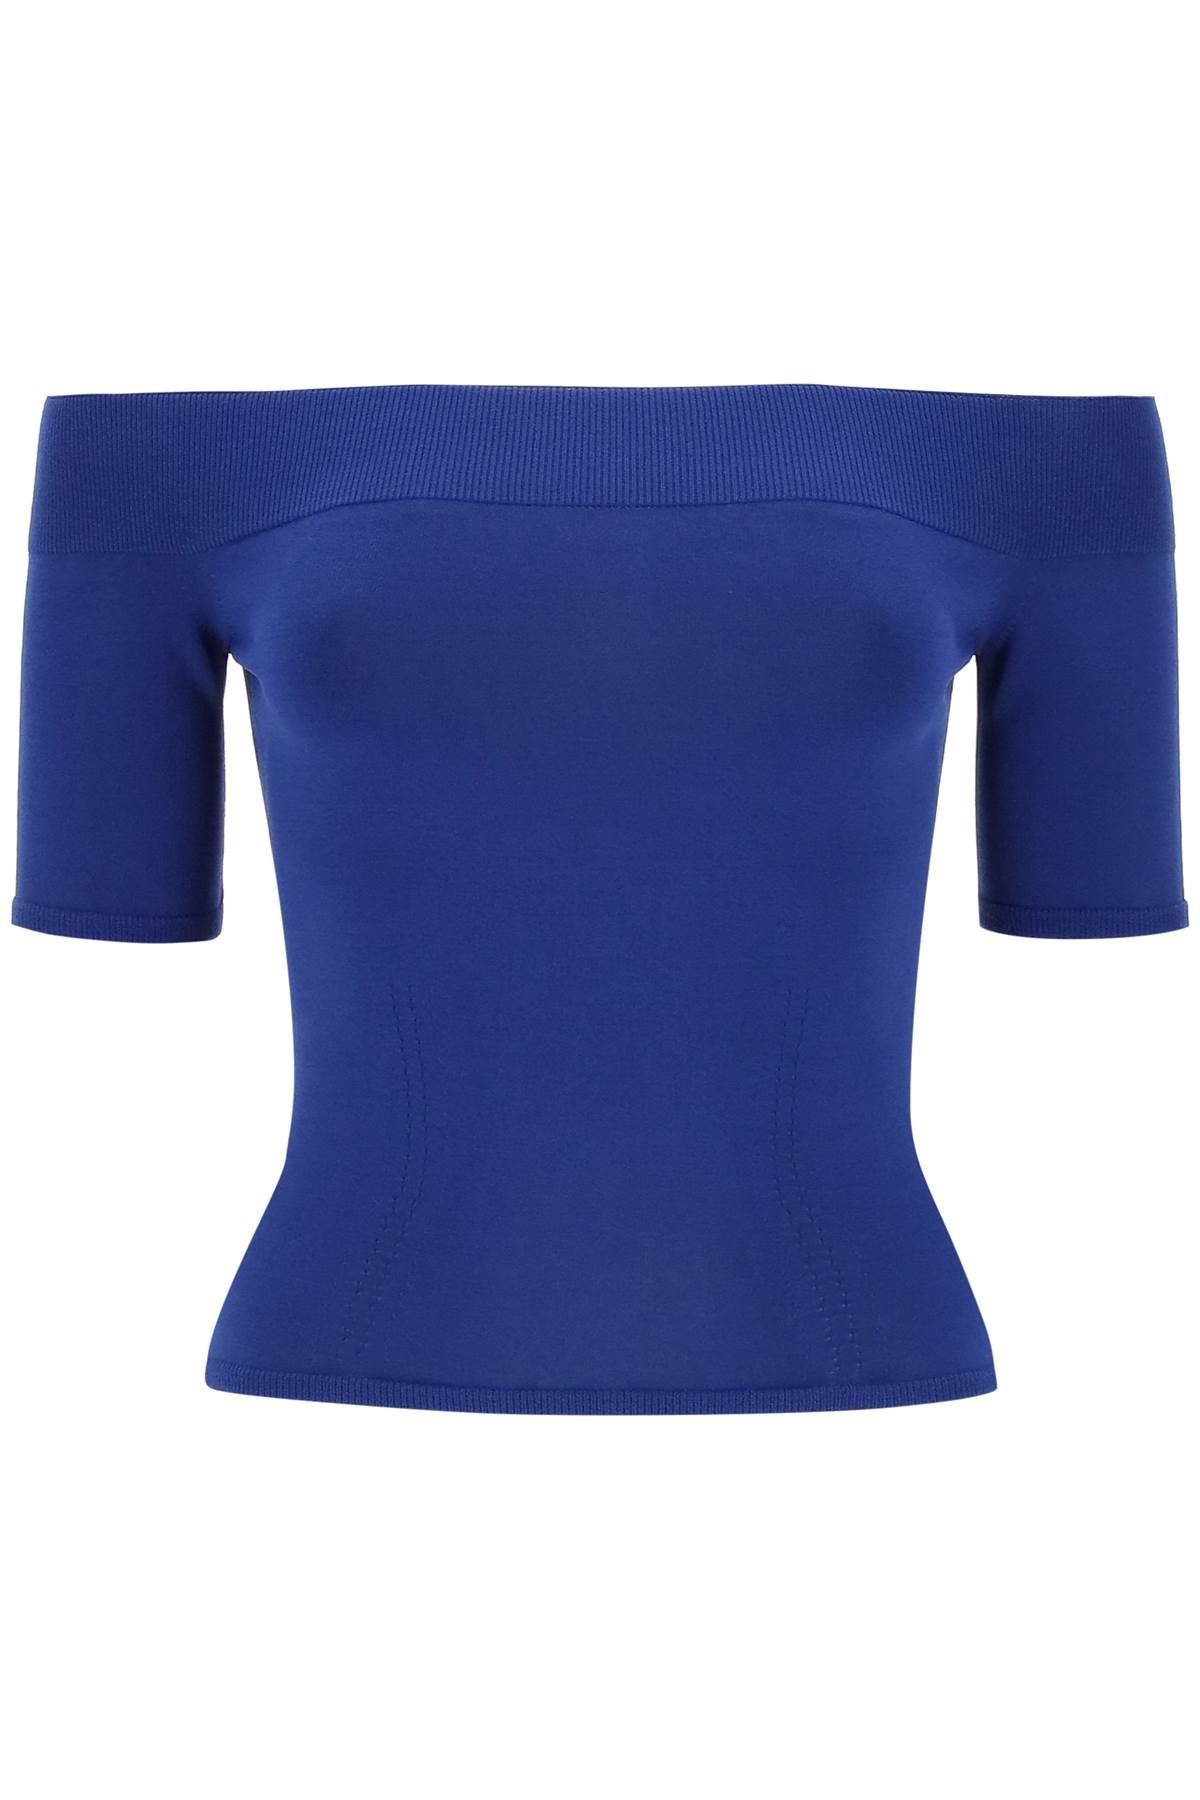 藍色女裝無肩褶邊短袖上衣-S24系列